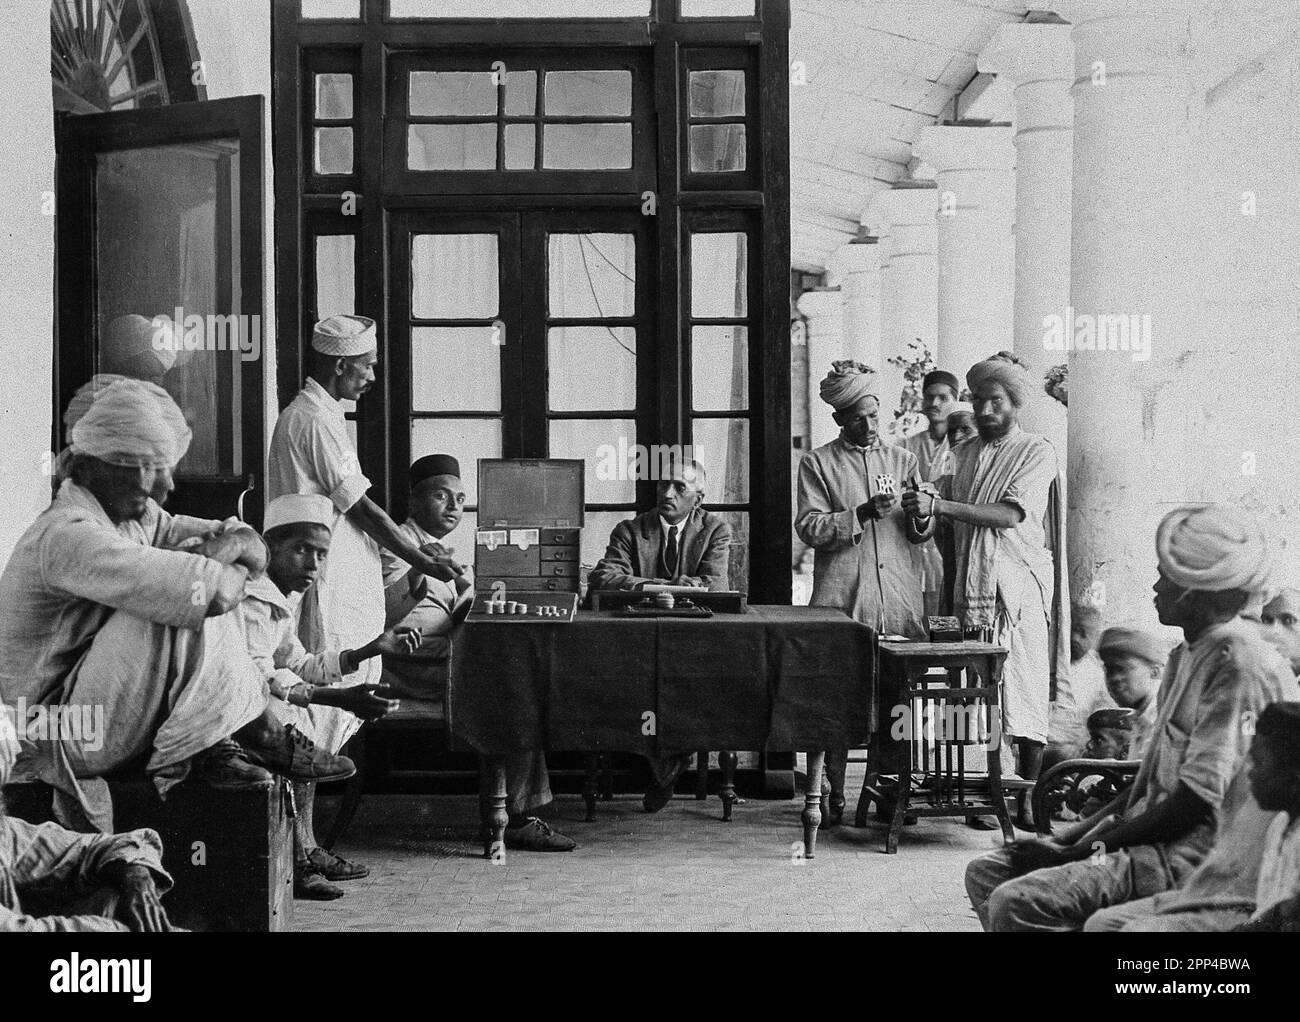 Das Pasteur Institute Hospital, Kasauli, Indien. Ca. 1910. Indische Patienten, die ihre Tagegelder für Nahrung erhalten. Erwachsene erhalten 6 annas A Stockfoto